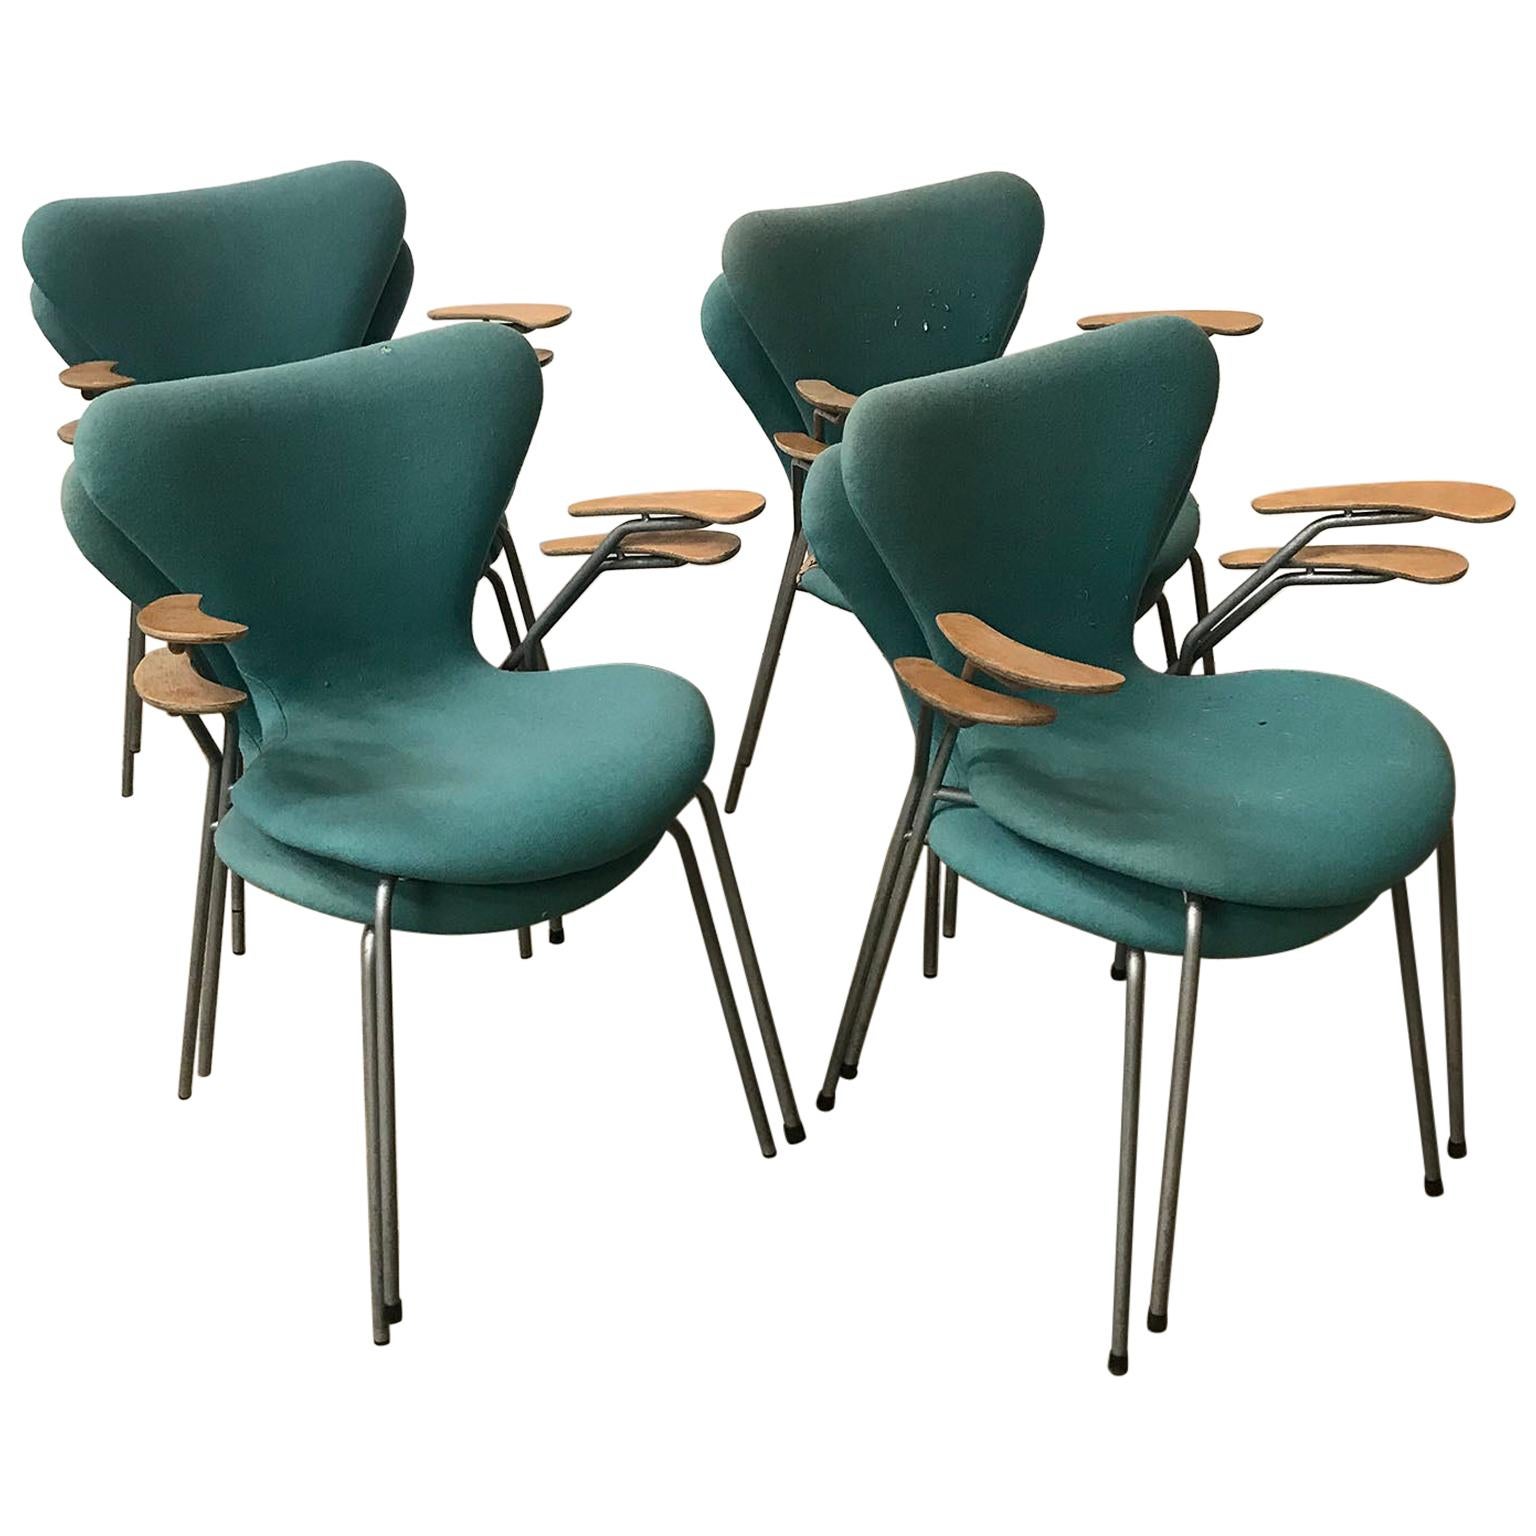 En 1955, Arne Jacobsen, huit fauteuils papillons turquoise à rembourrage 3207